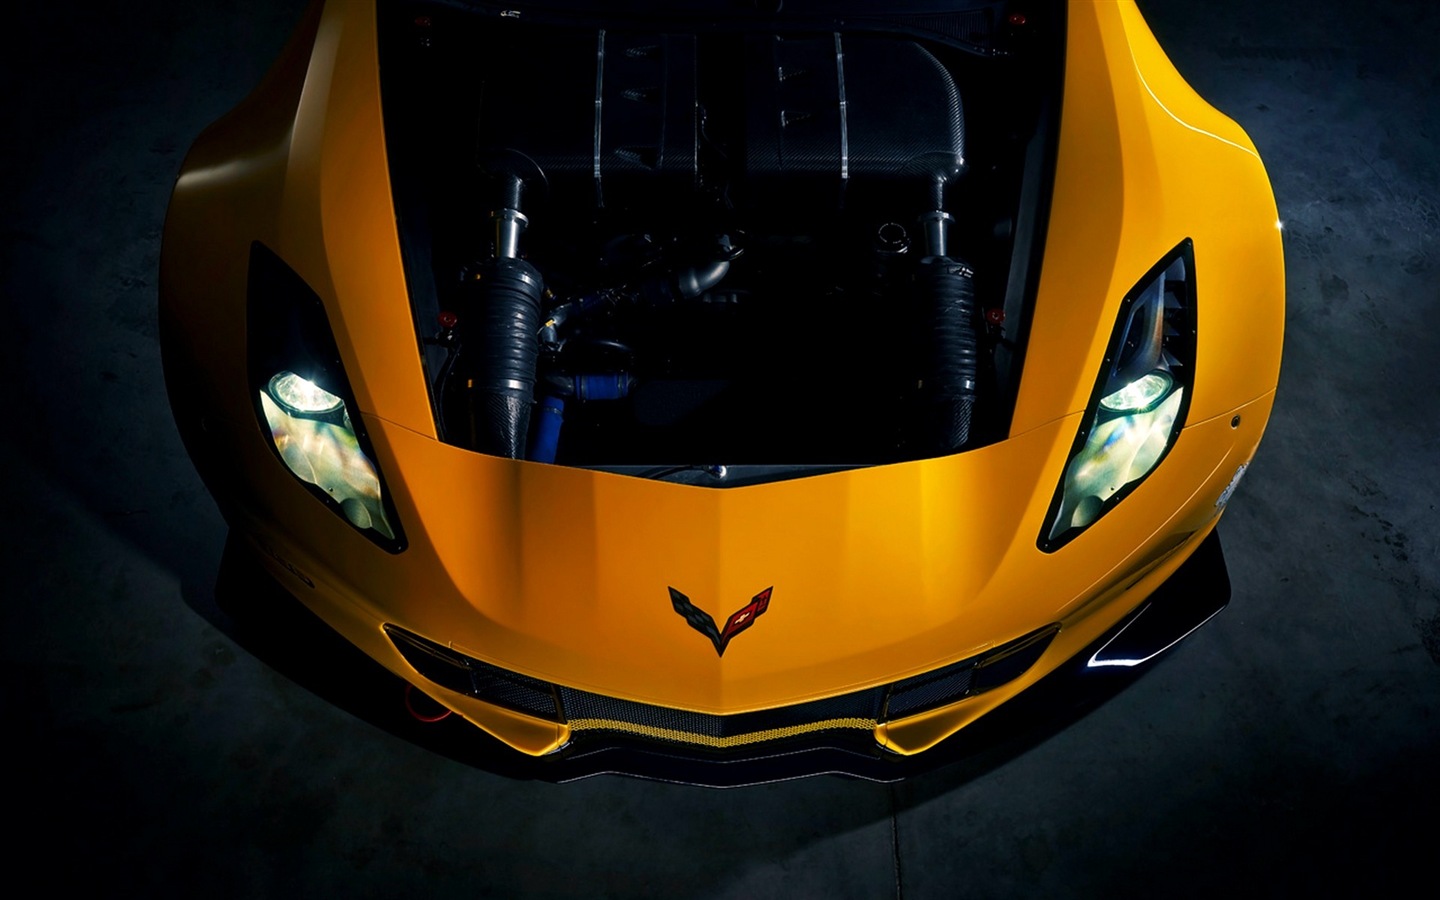 2015年雪佛蘭 Corvette Z06跑車高清壁紙 #2 - 1440x900